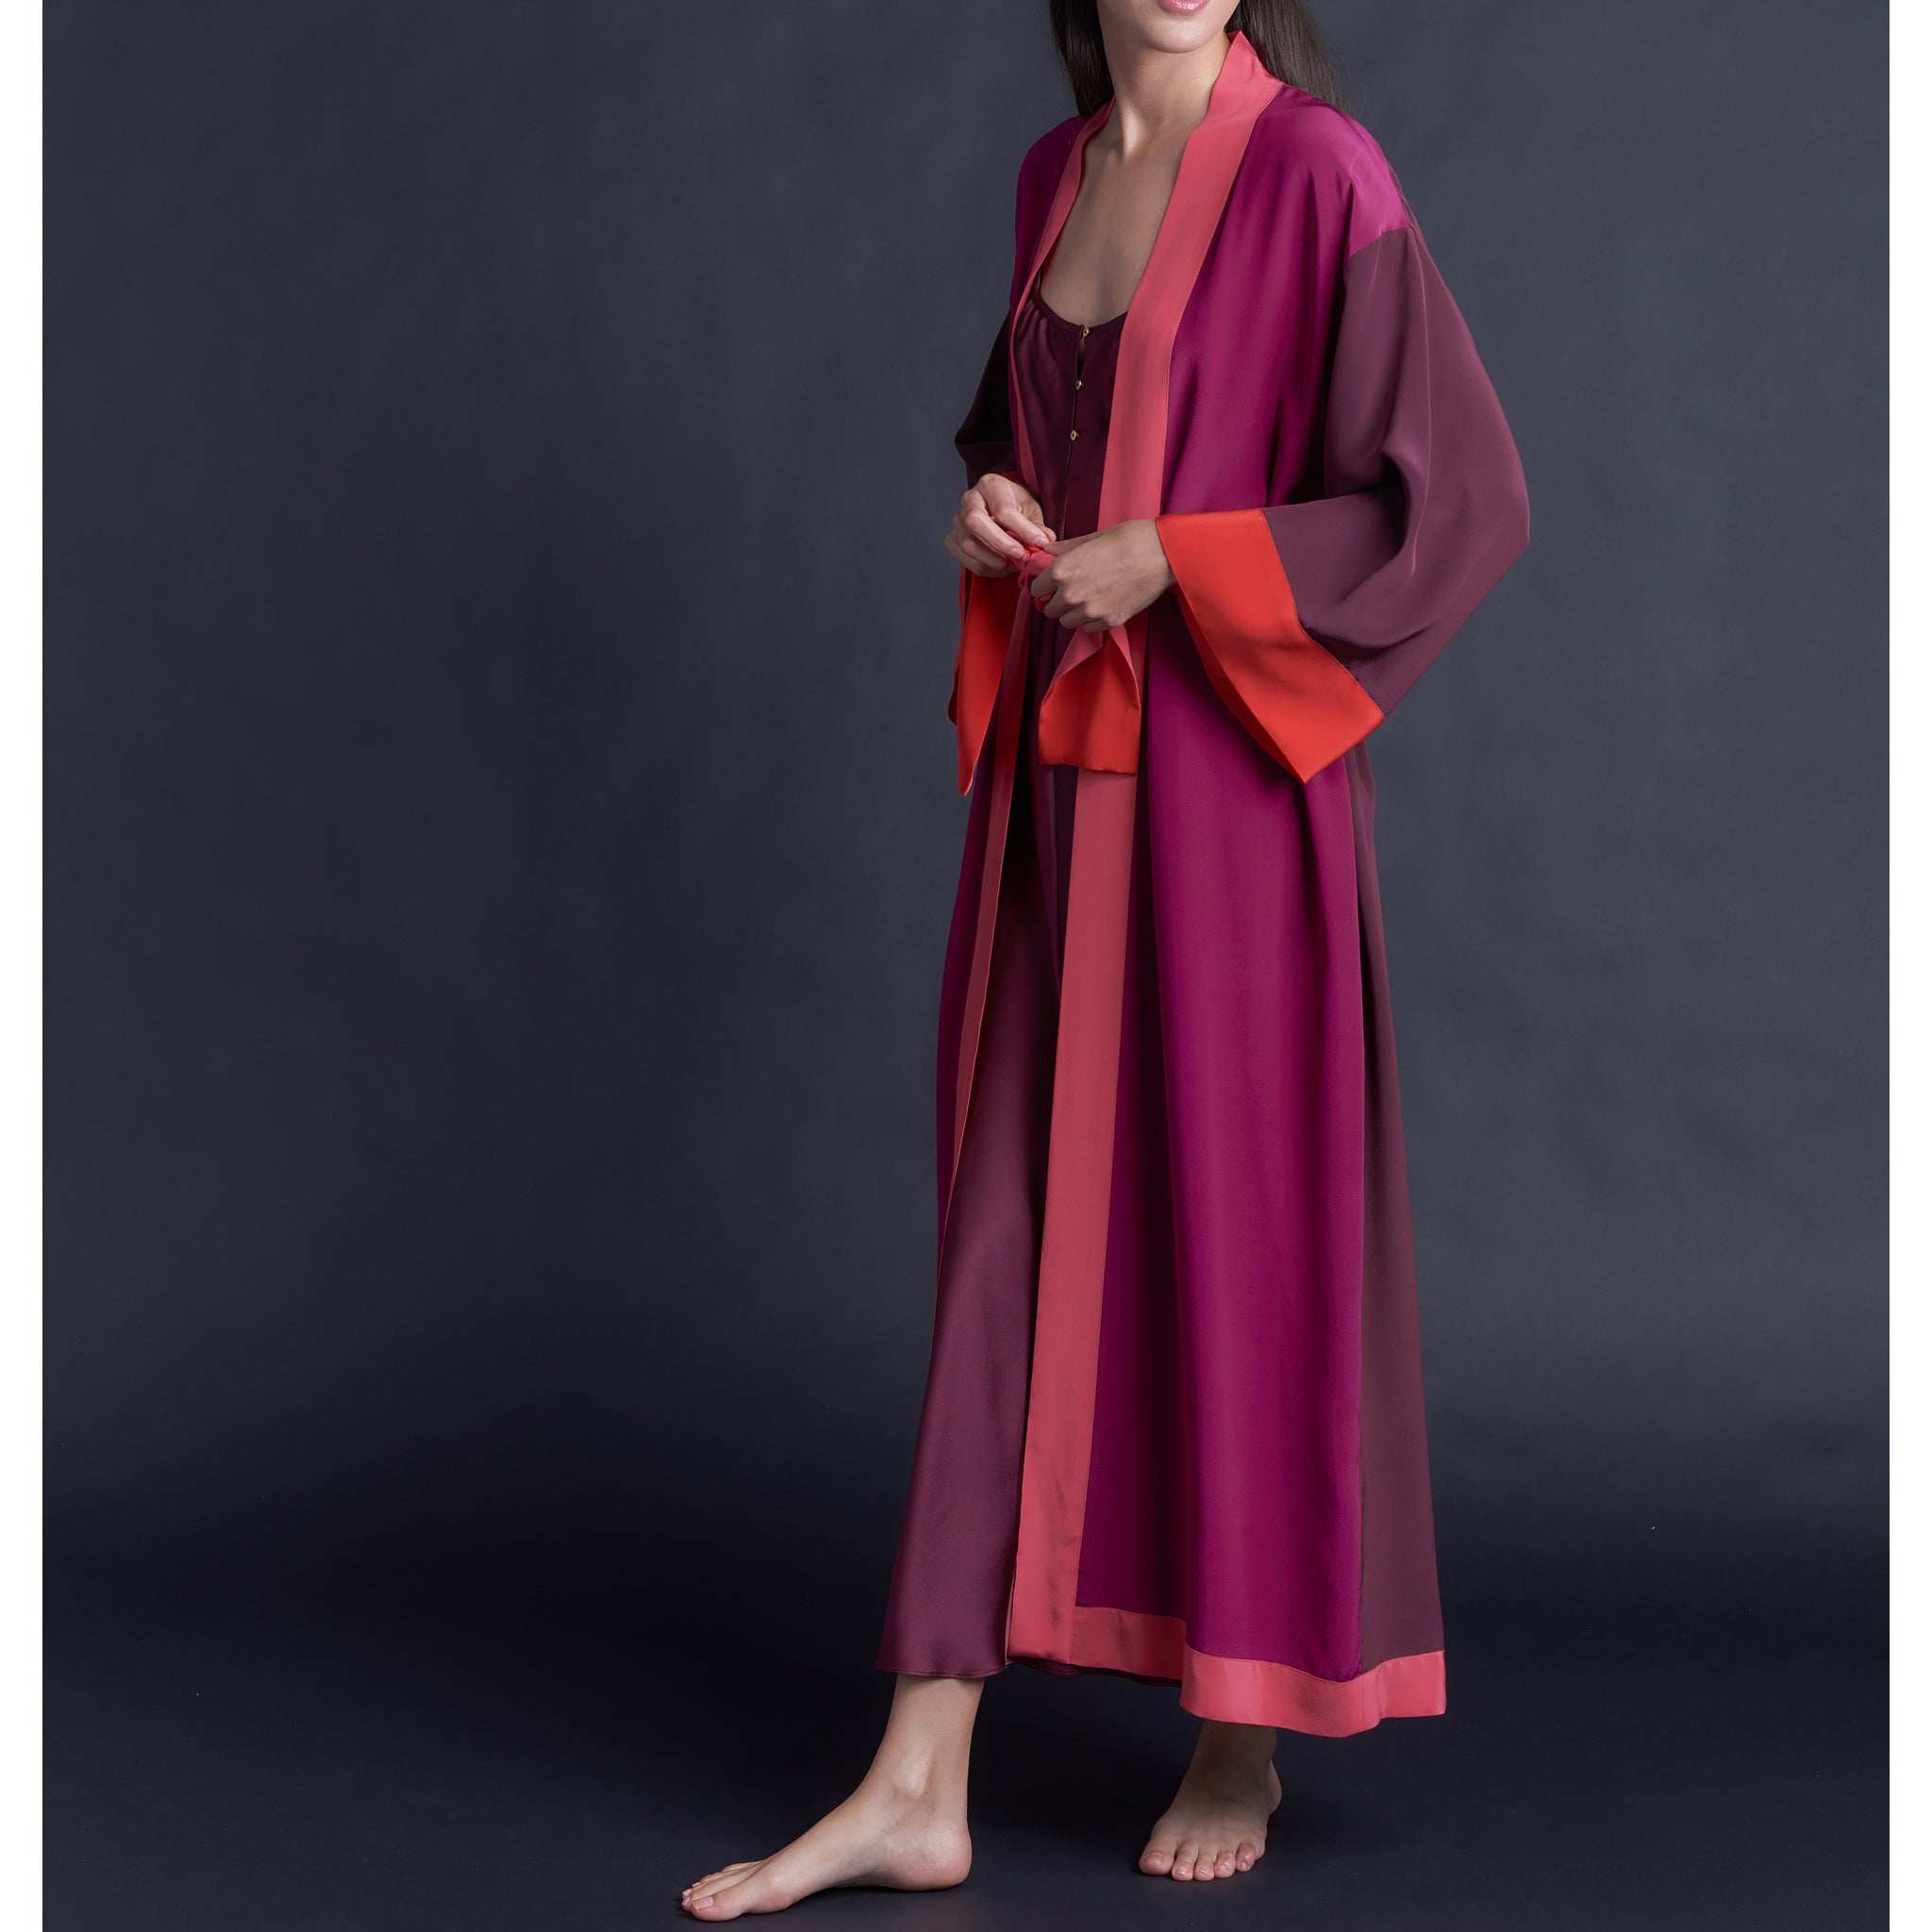 Asteria Kimono Robe in Silk Crepe De Chine Colorblock Reds